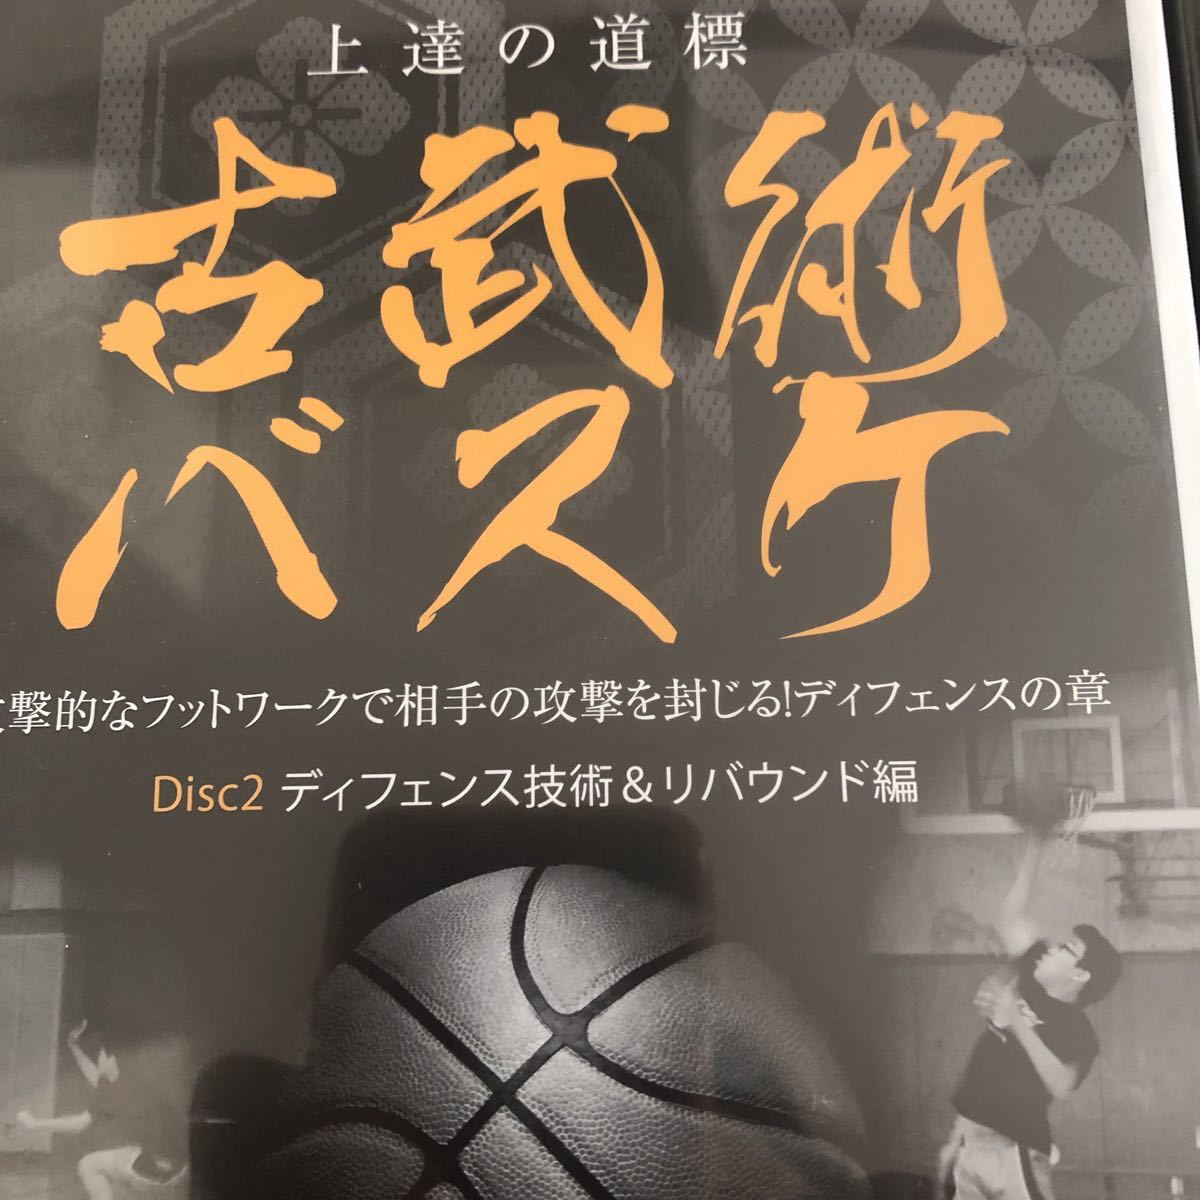 特典 古武術 バスケ 桐朋学園 練習法 DVD フットワーク リバウンド ディフェンス編_画像3